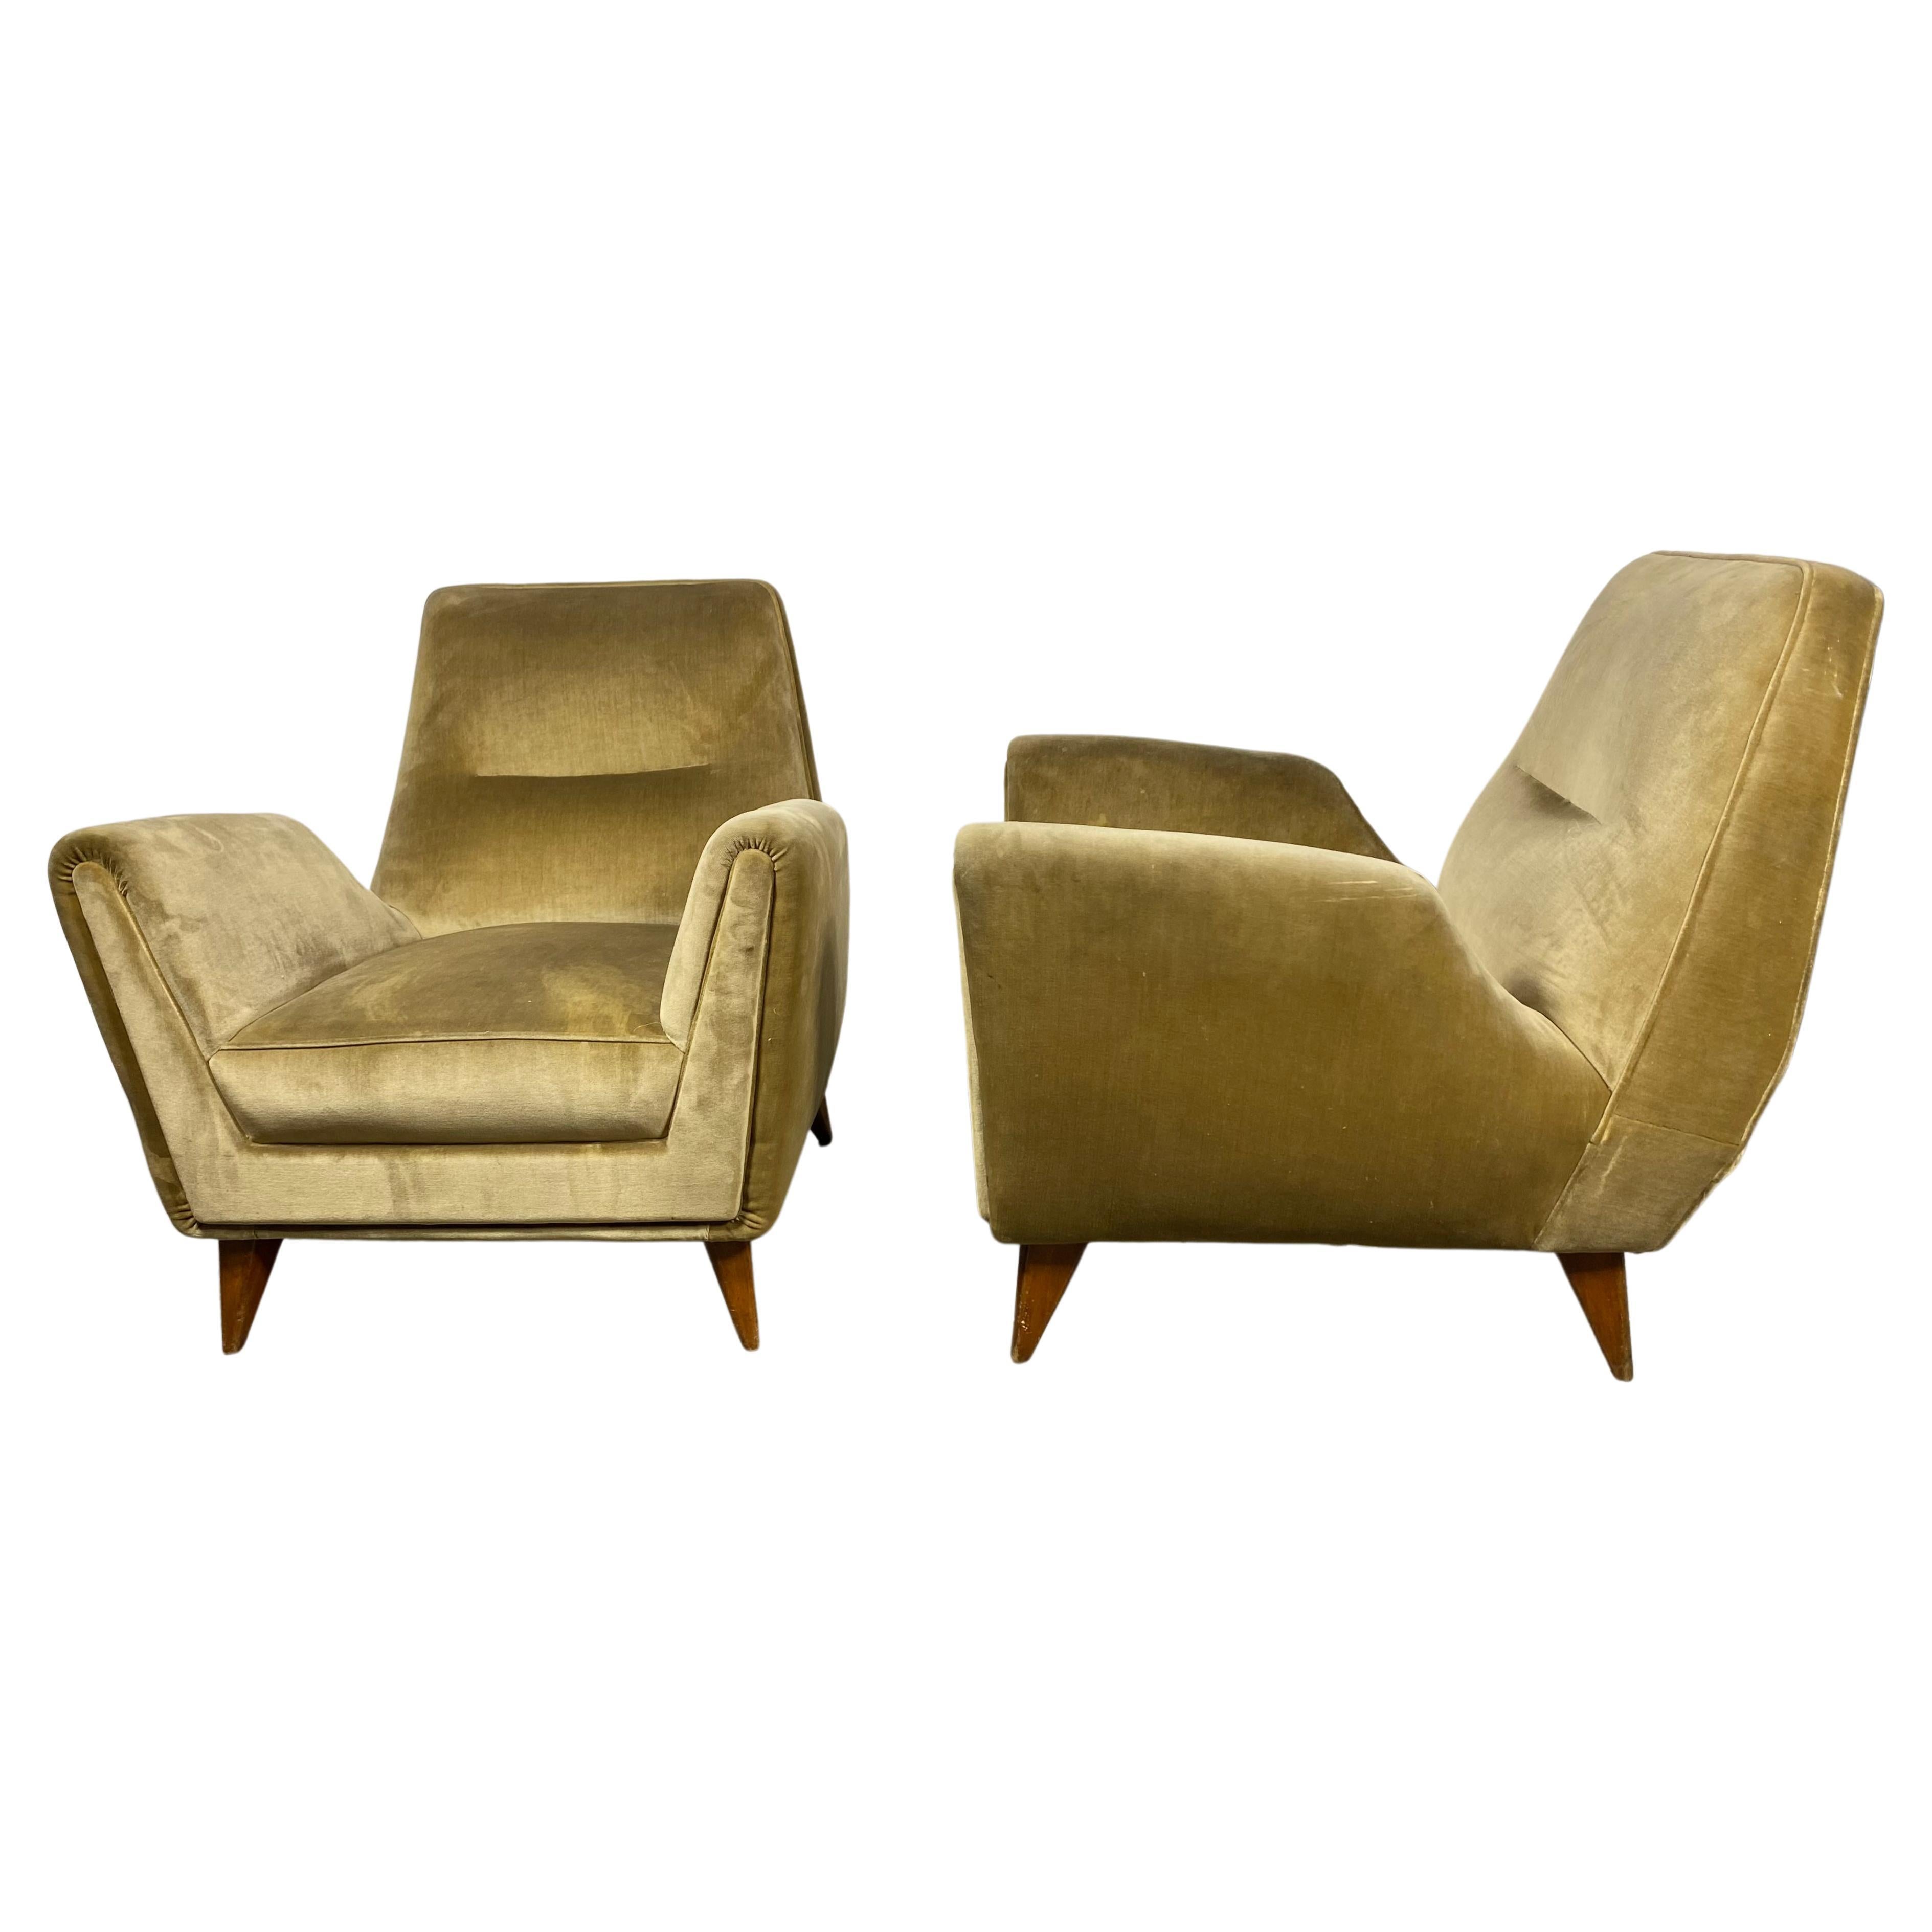 Stunning Pair Italian Modernist Lounge Chairs by Isa Bergamo & Att Gio Ponti